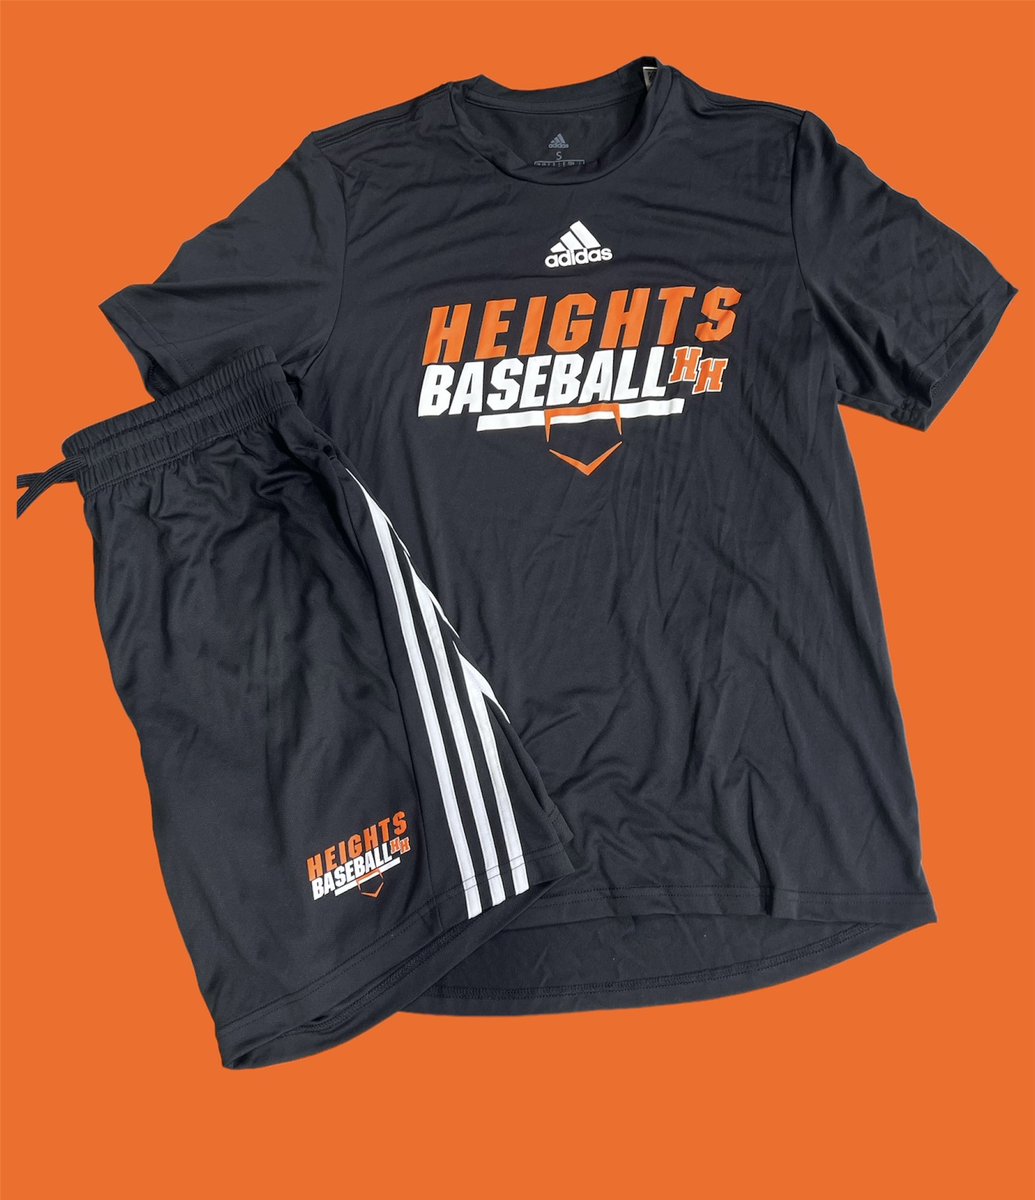 #heights #baseball #teamgear #teamapparel #teamsales #onlinesales #spiritwear